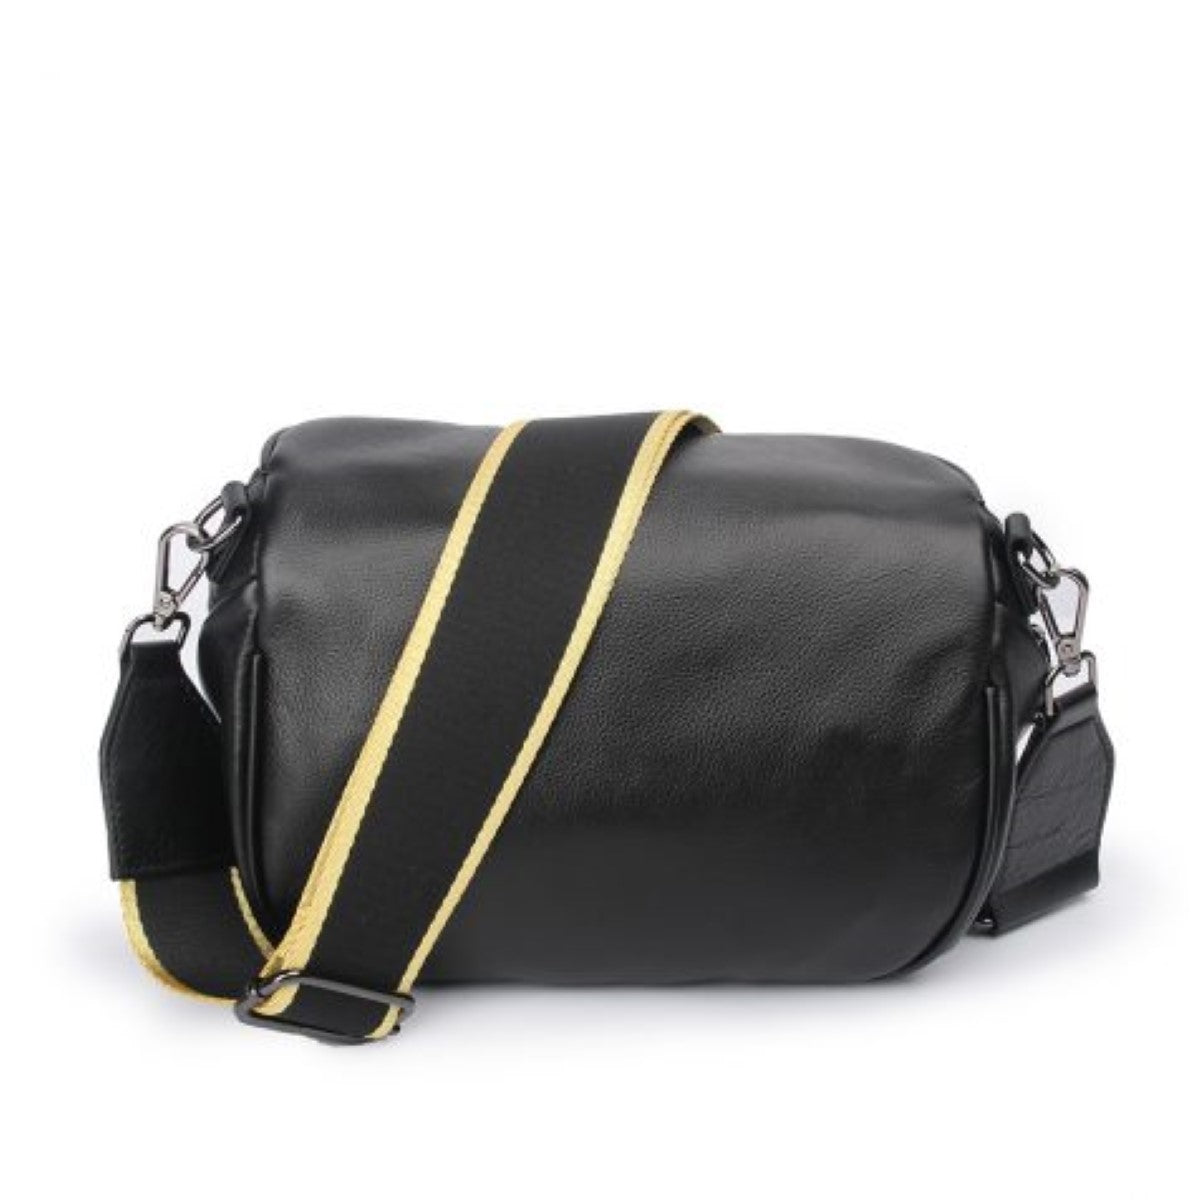 obsessed bag - black stud Handbags Hi Ho + Co. 